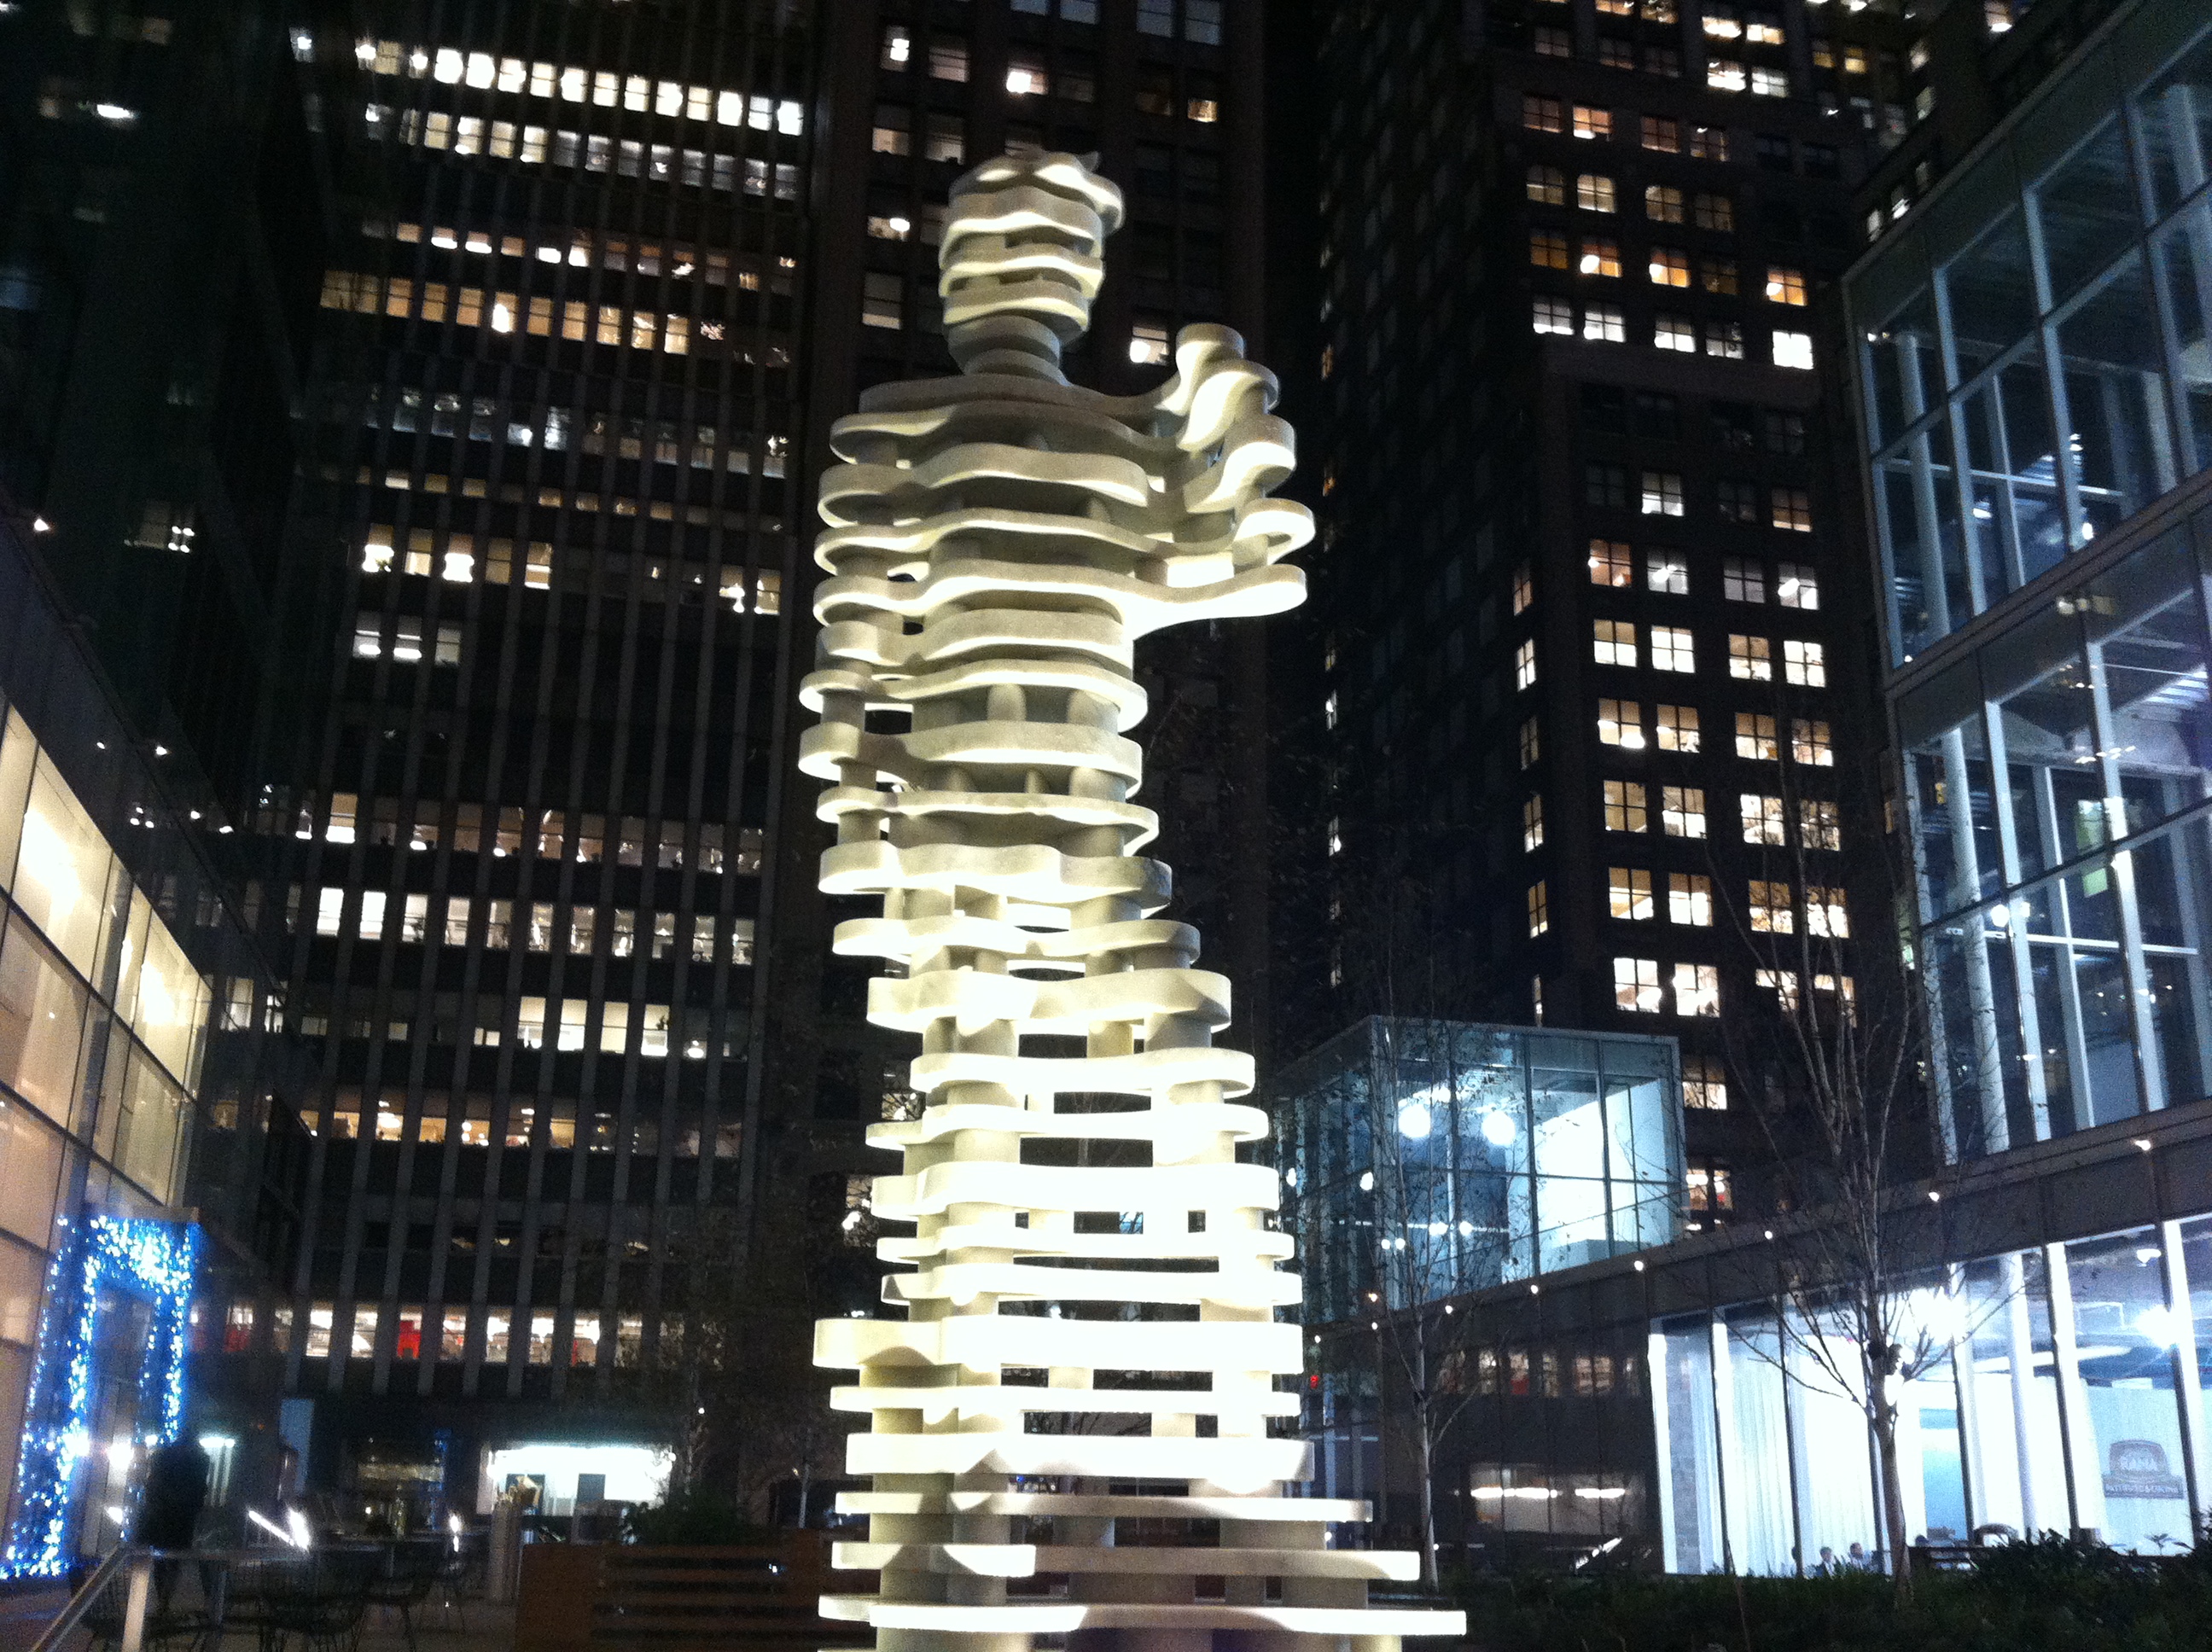 Una escultura heroica en el centro de Brooklyn, NY.